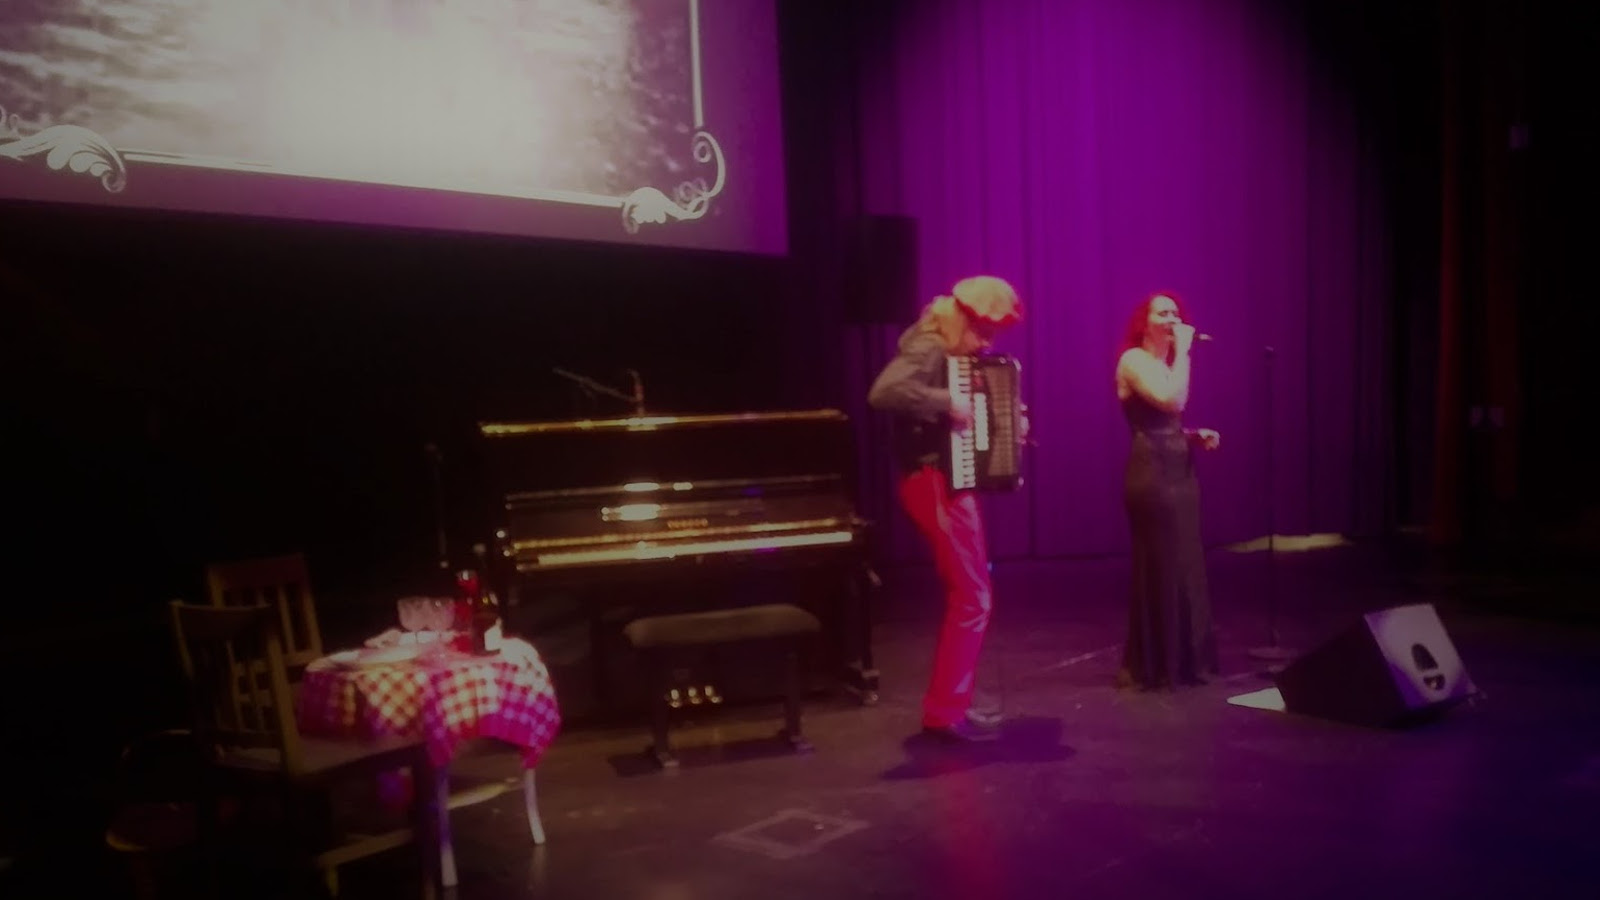 Kuvassa violetteisävyisessä näyttämötilassa oikella laulaa Minna Vainionpää, jolla on punainen pitkä tukka ja päällään ruskea, pitkä puku.  Hänen vasemmalla puolellaan on hanuria soittava Esko Grundström, jolla punainen nauha pään ympäri kietaistuna vaaleissa pitkissä hiuksissaan.  Hanuristin takana on piano pianon edessa vasemmalla on matala, valkoinen pöytä, jonka päällä valko-punaruutuinen liina. Vasemmalla ylhäällä on scriini, jolla on vaalea valoa. 